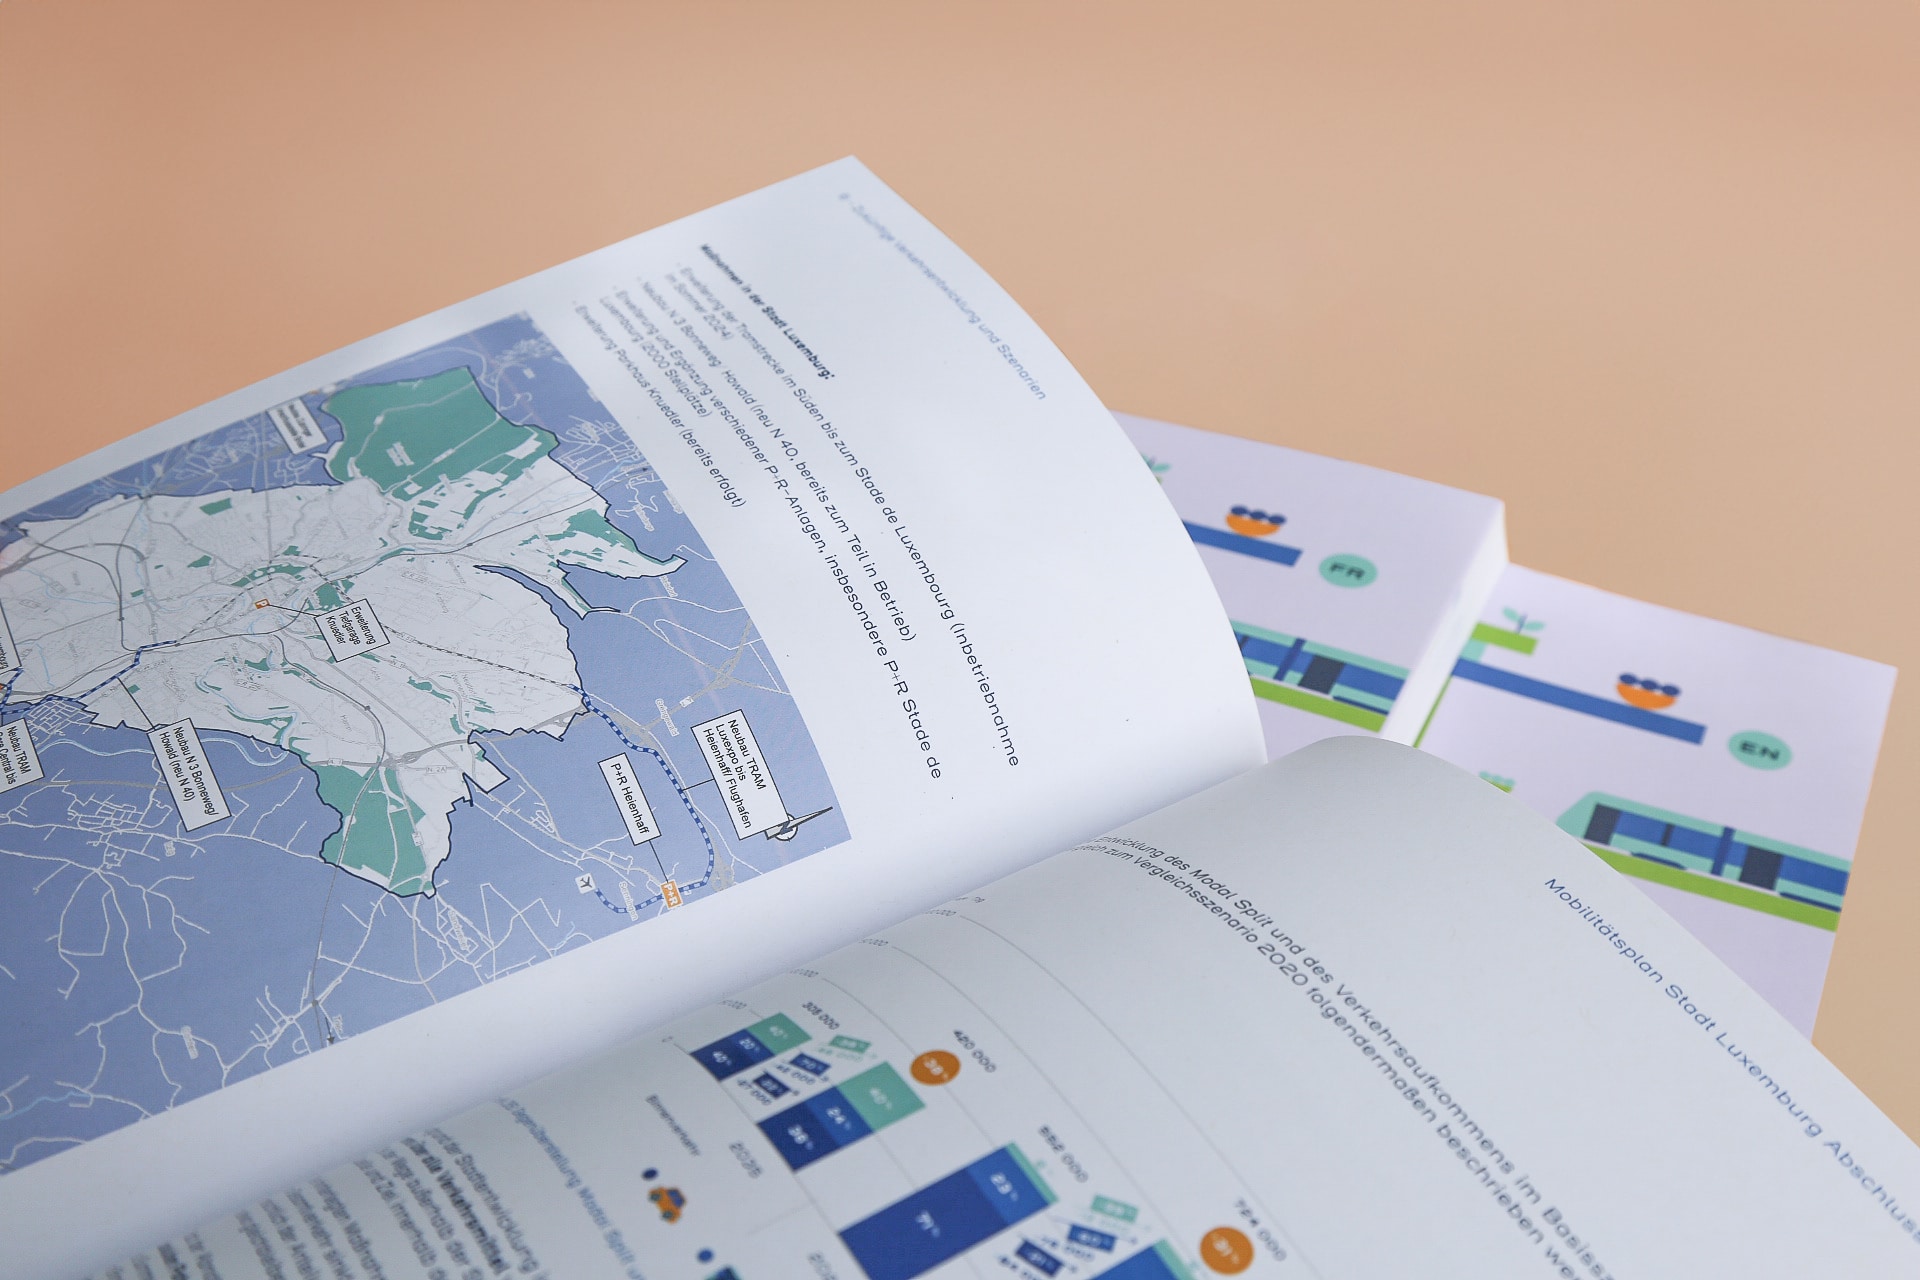 Page ouverte d'une brochure affichant une carte détaillée des routes de Luxembourg avec des descriptions en allemand, avec des brochures similaires visibles en arrière-plan sur une surface à la couleur pêche.